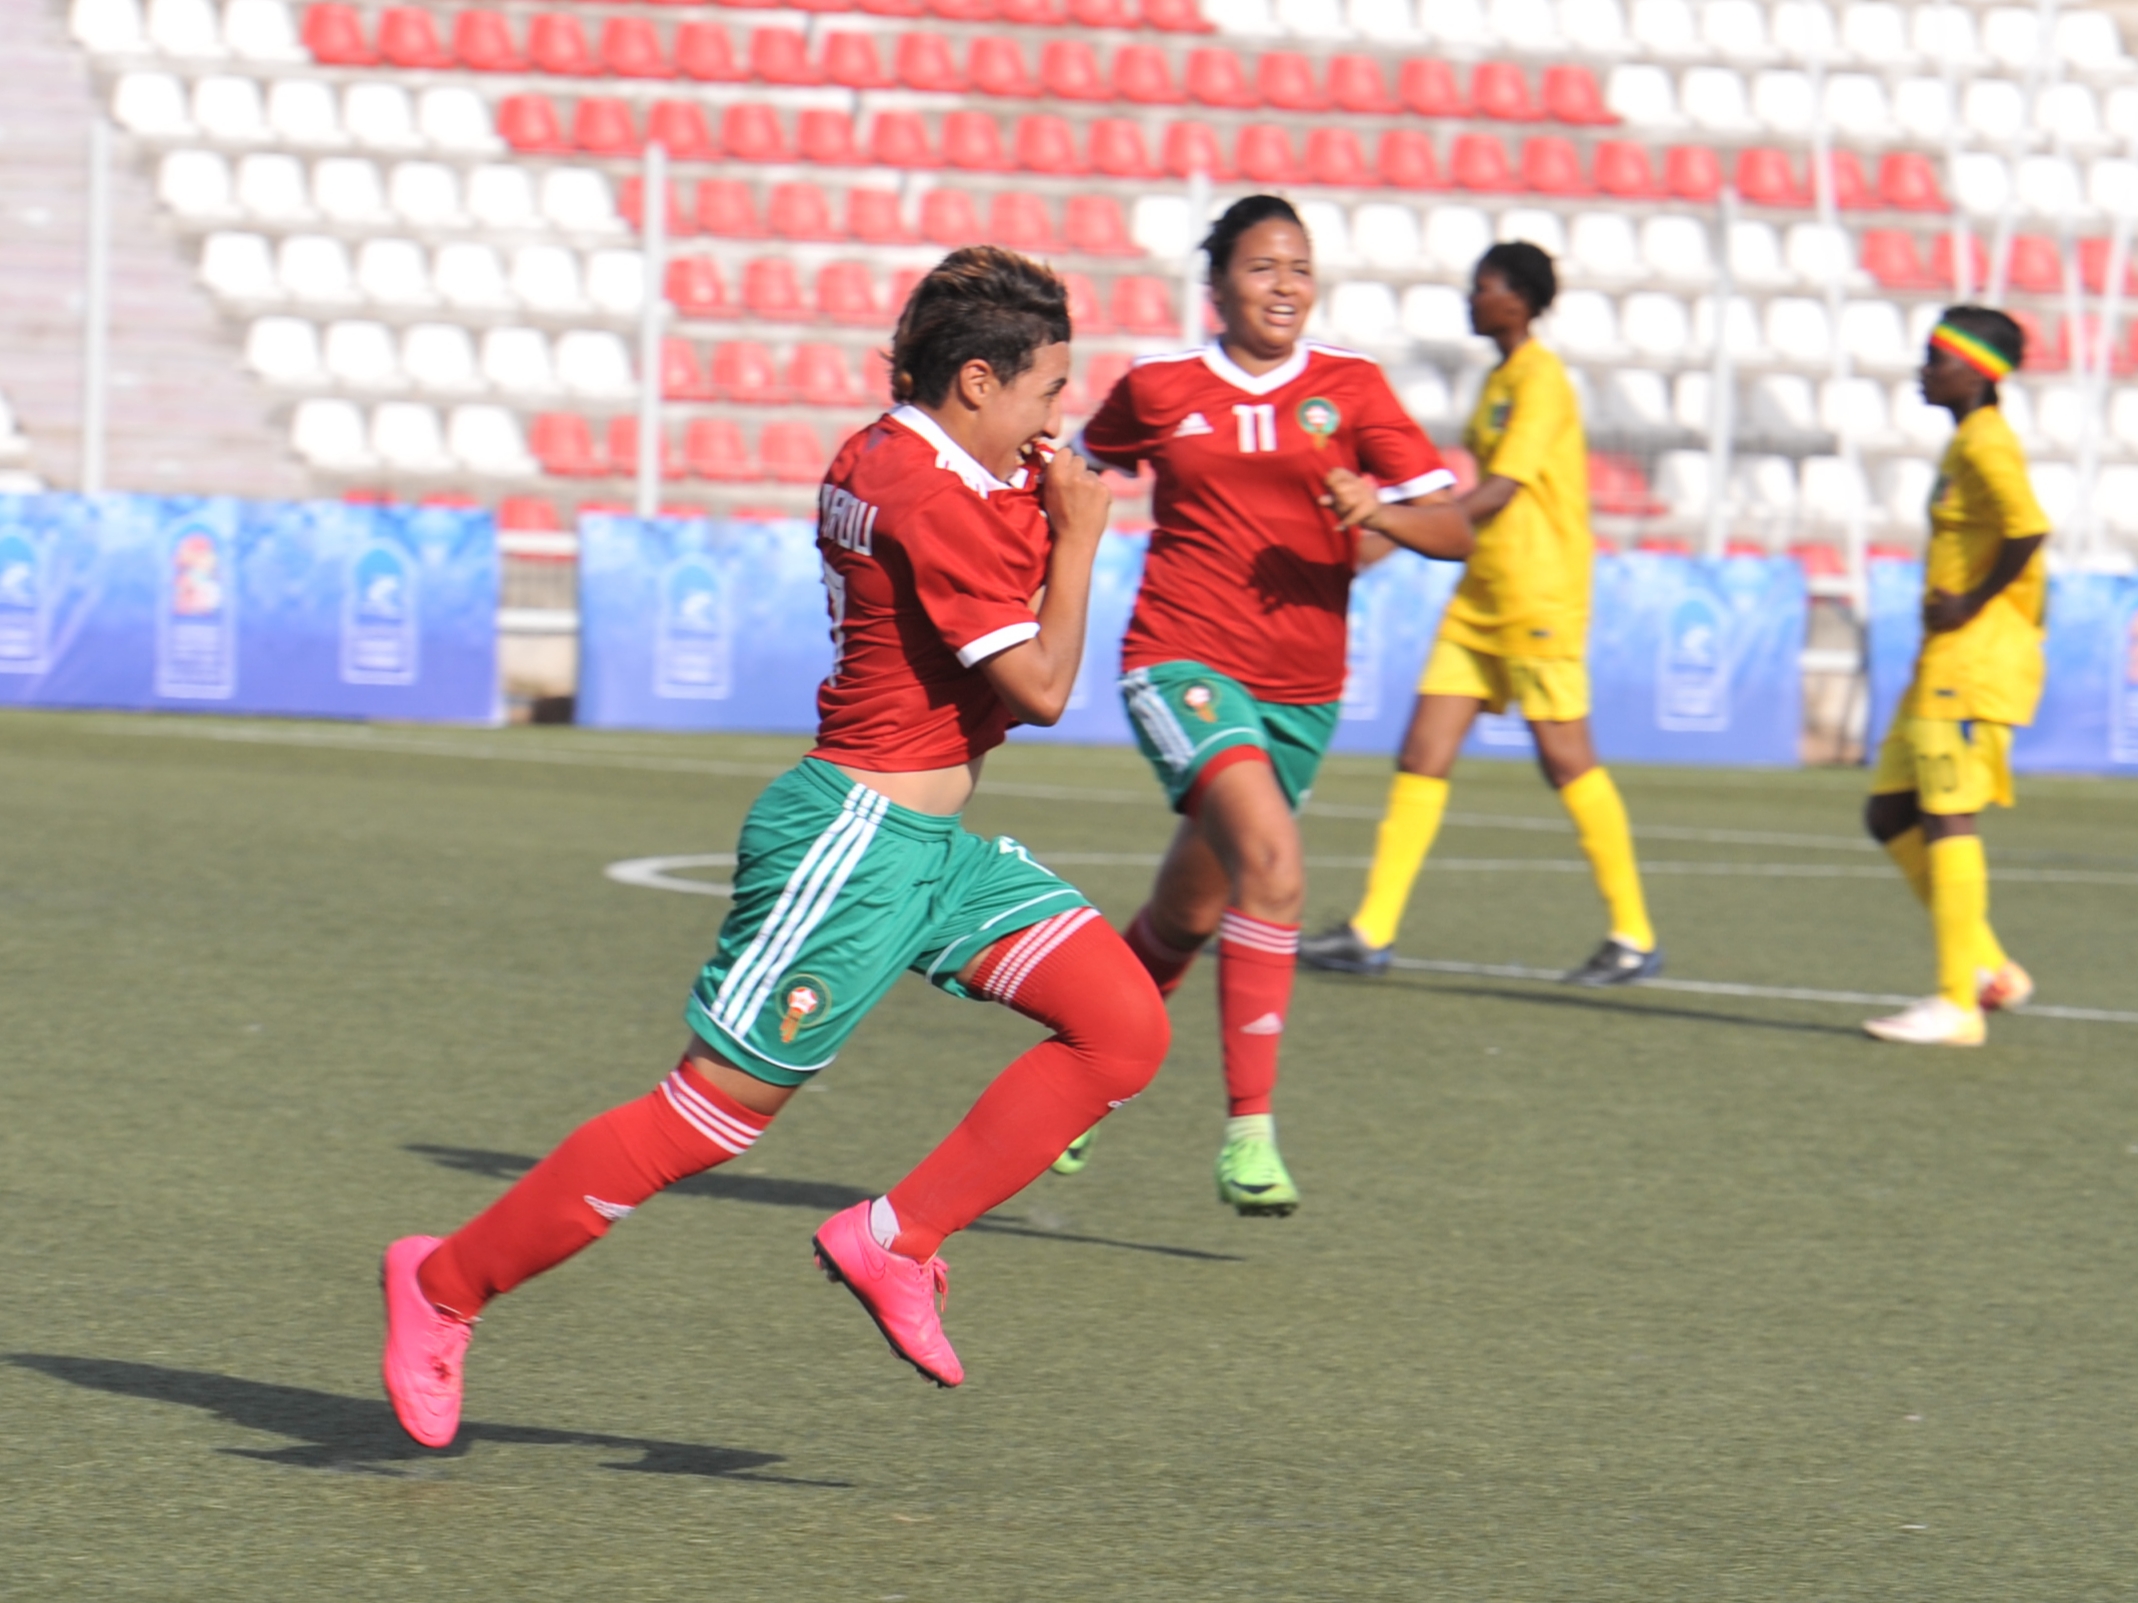 كرة القدم النسوية- الألعاب الإفريقية: المنتخب المغربي يدك الشباك المالية ويعبر لدور النصف